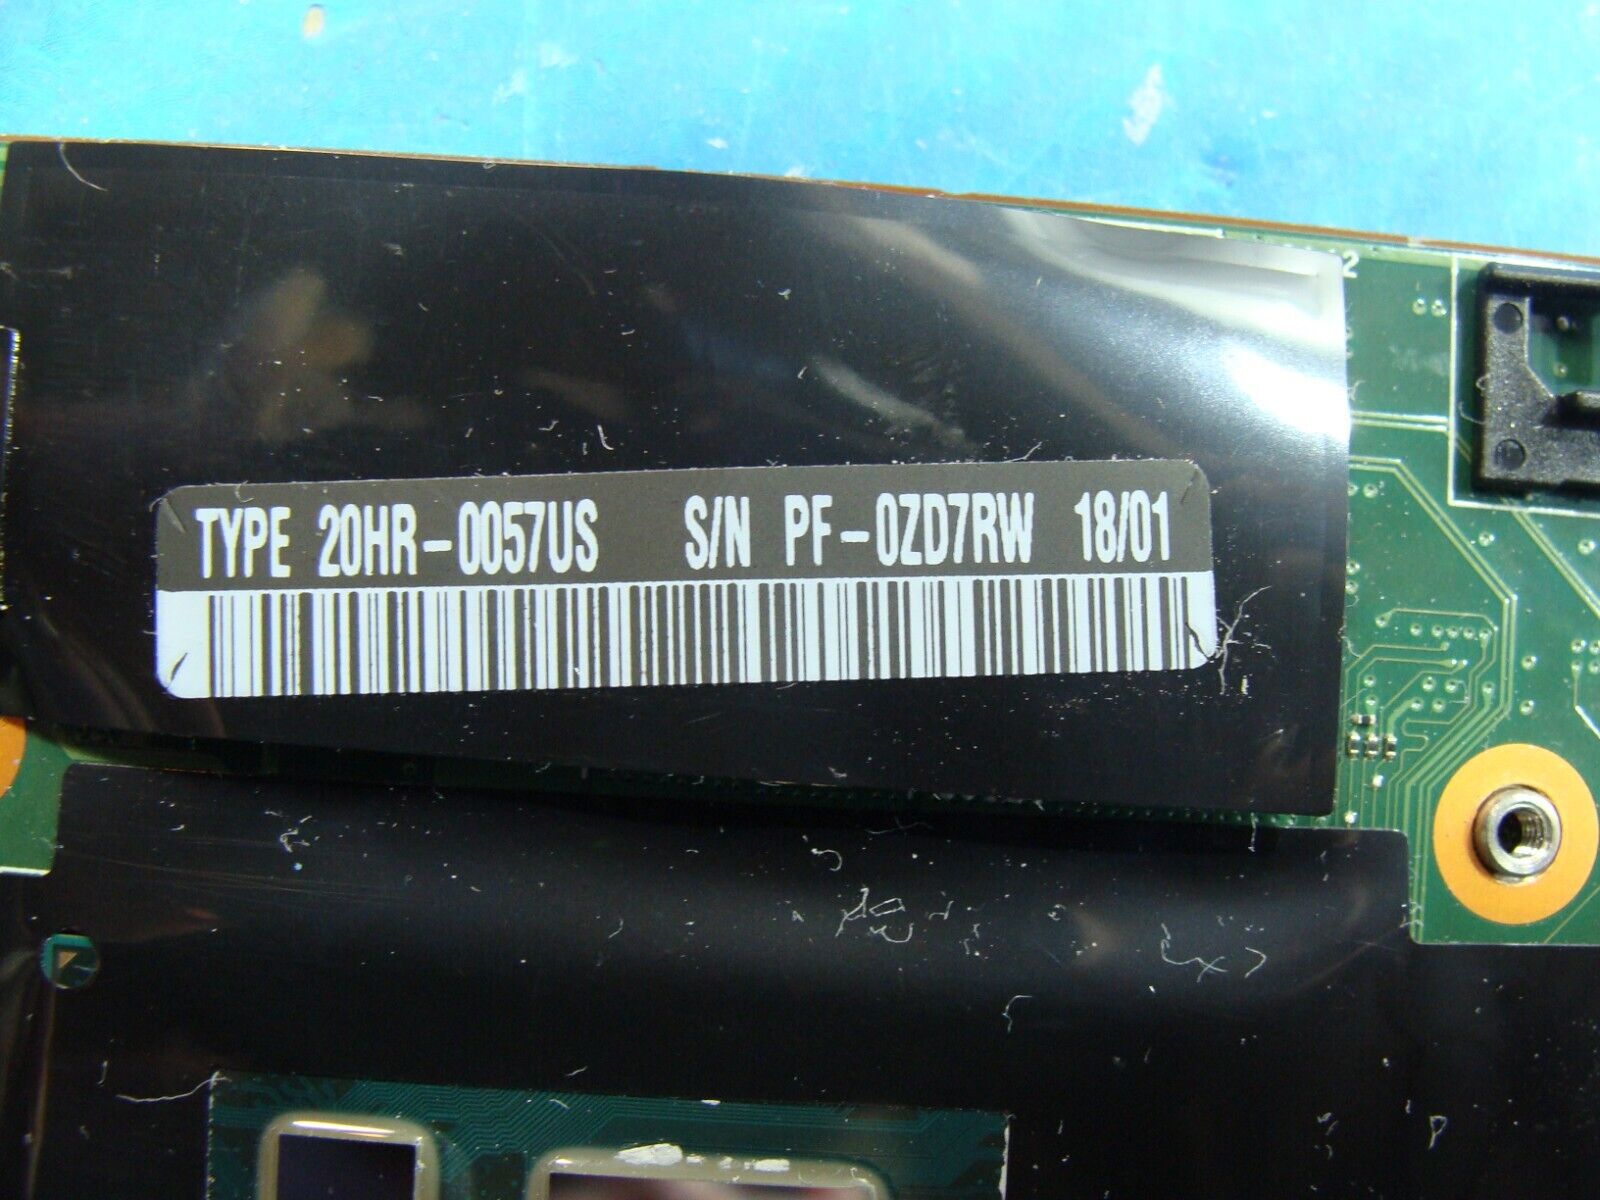 Lenovo ThinkPad 14” X1 Carbon 5th Gen i7-7500u 2.7GHz 8GB Motherboard 01AY065